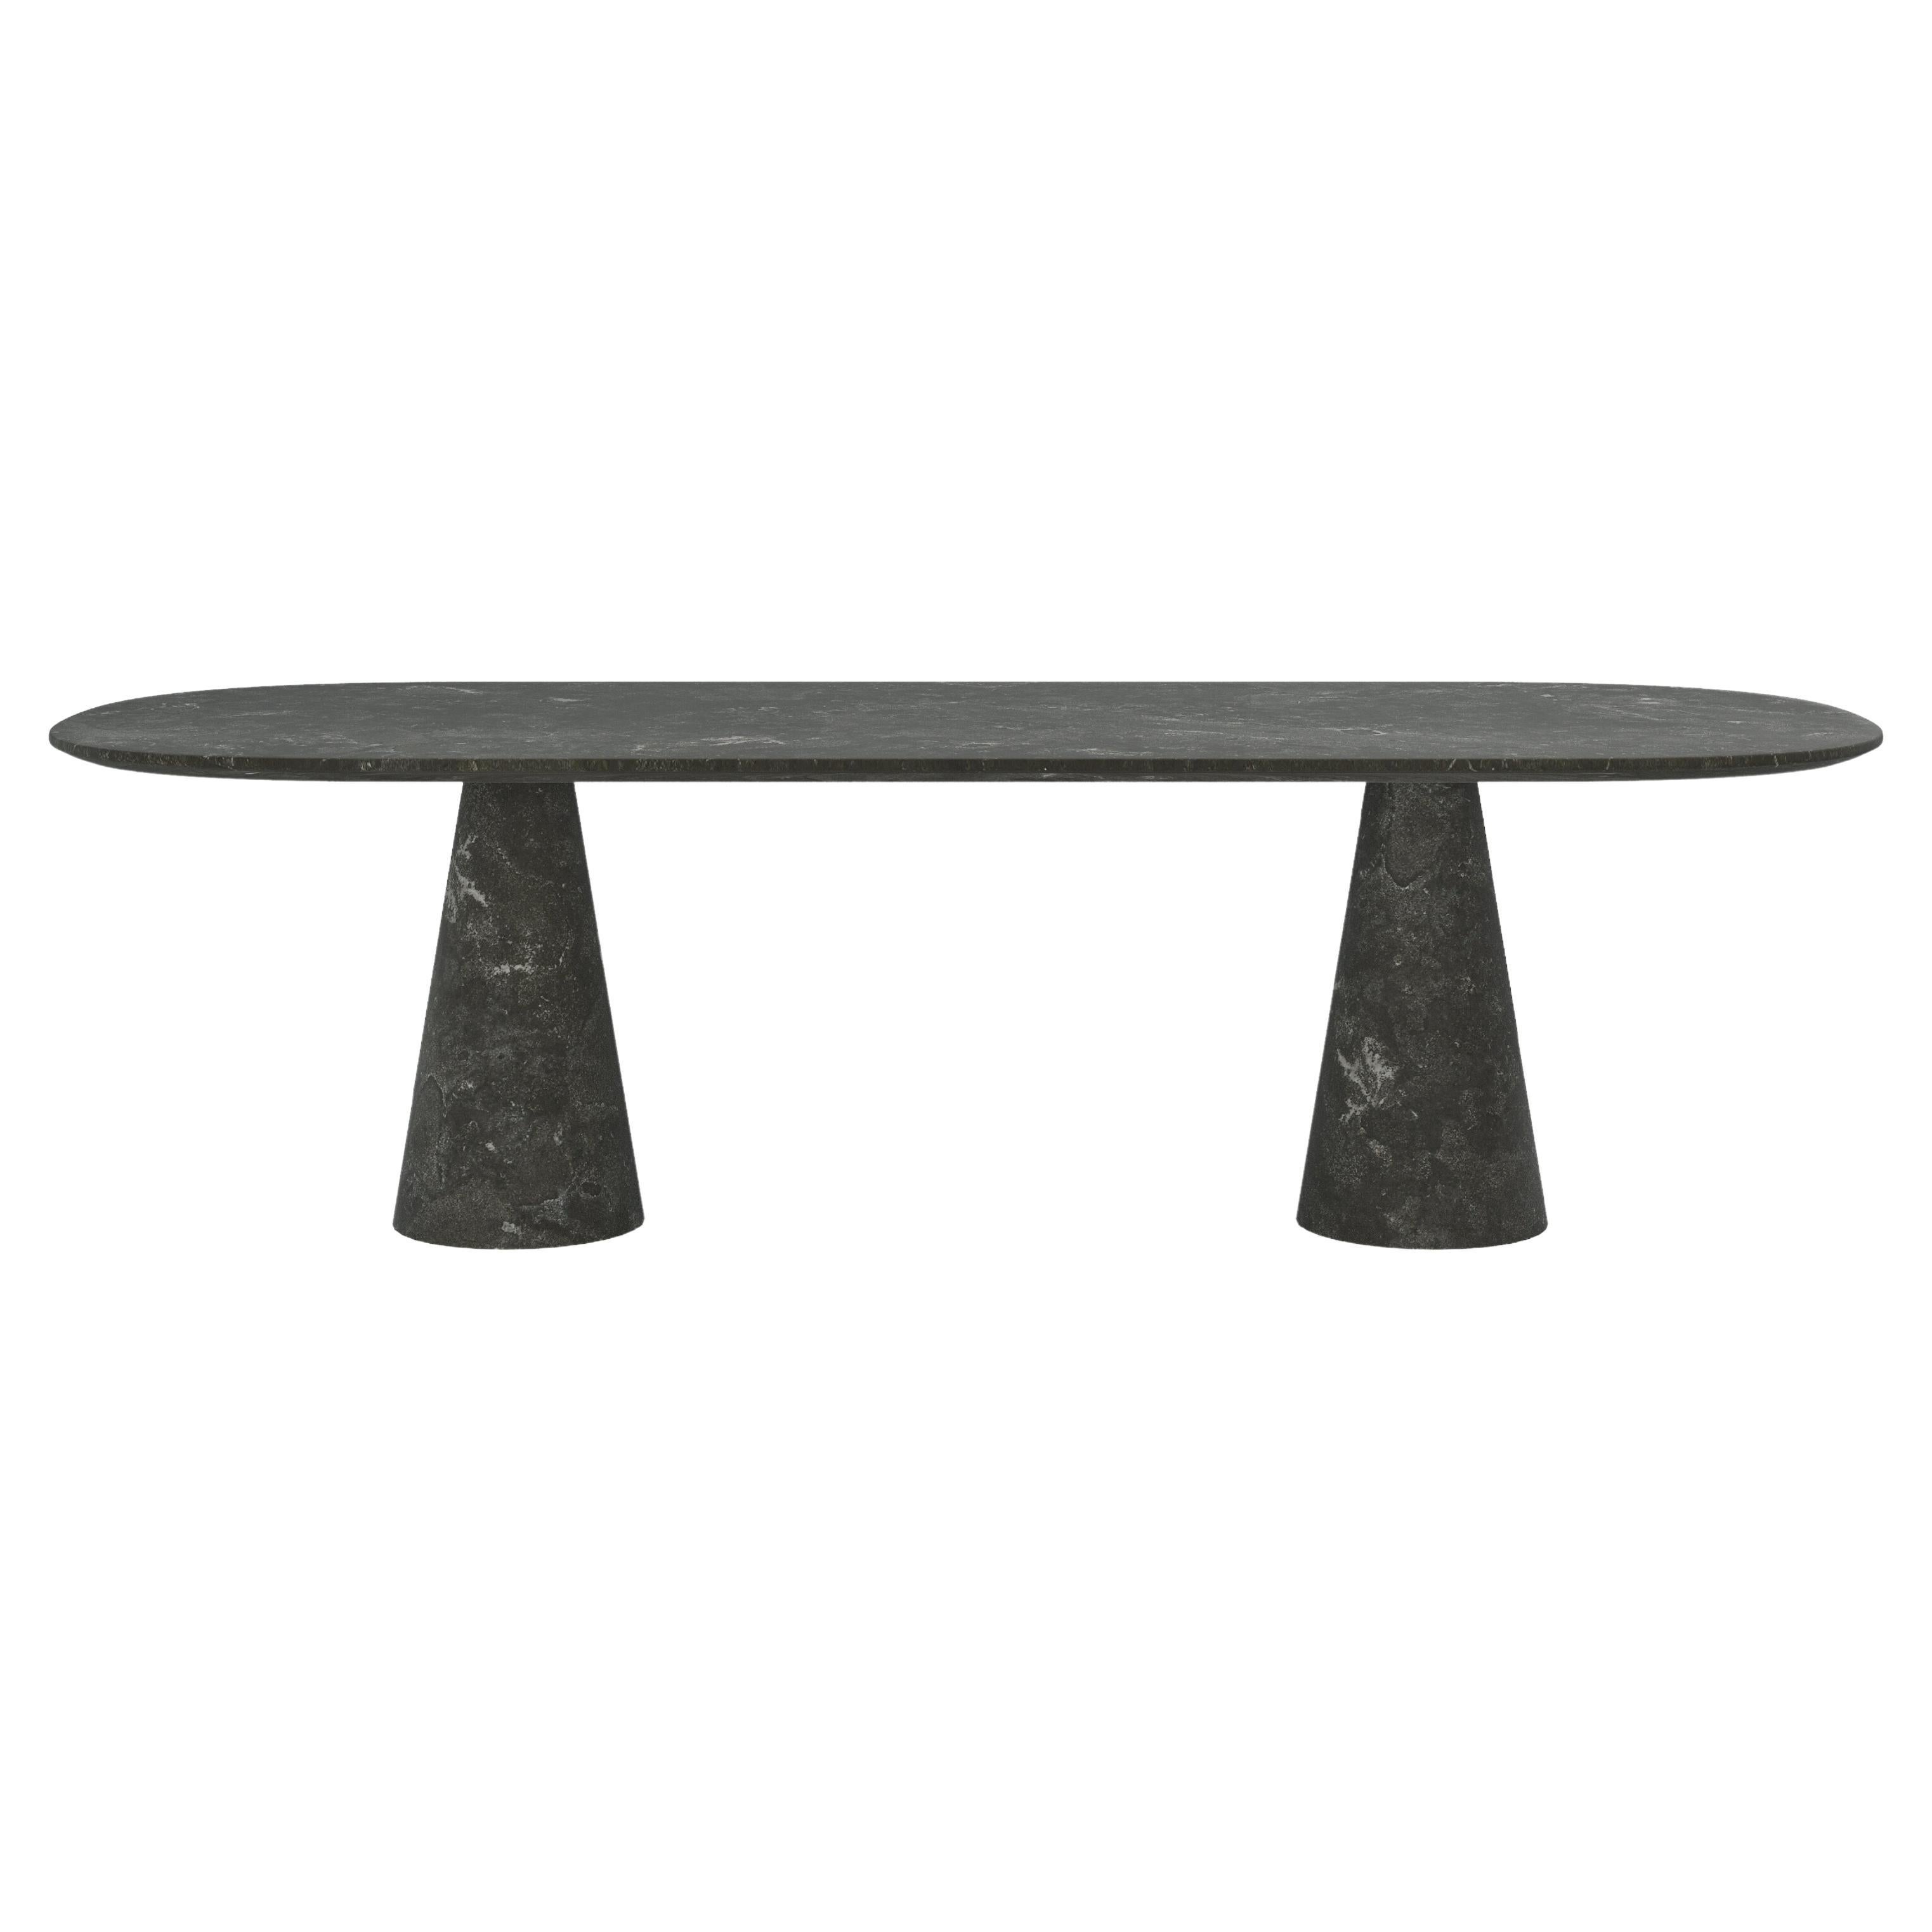 FORM(LA) Cono Oval Dining Table 84”L x 42”W x 30”H Nero Petite Granite For Sale